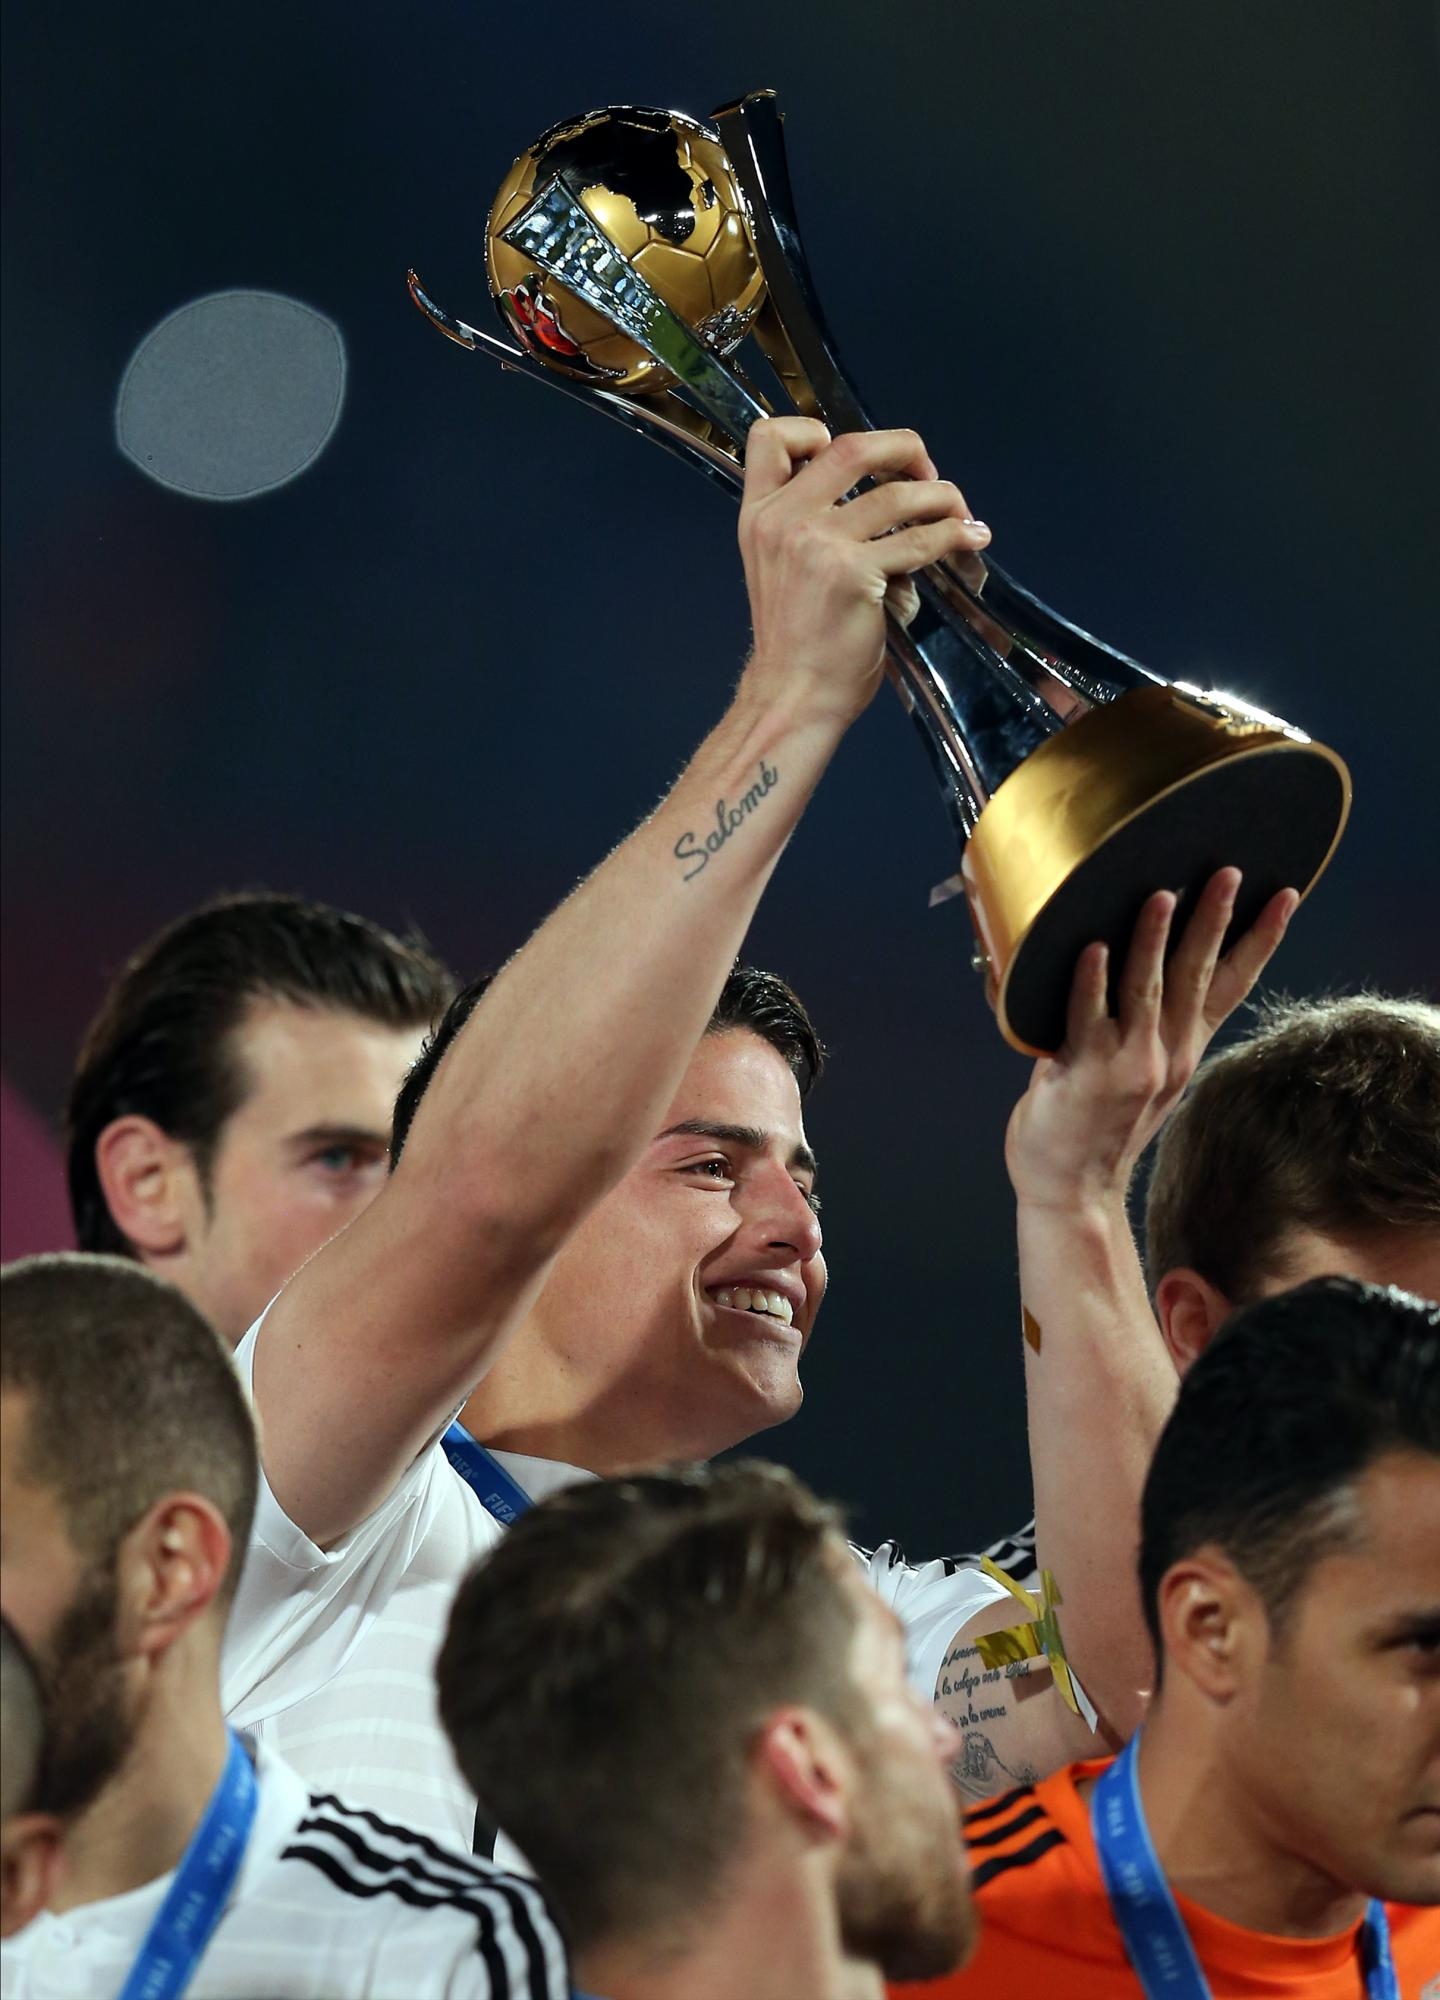 Фото футбол кубок. Хамес Родригес с Кубком. Хамес Родригес трофей см 2014.